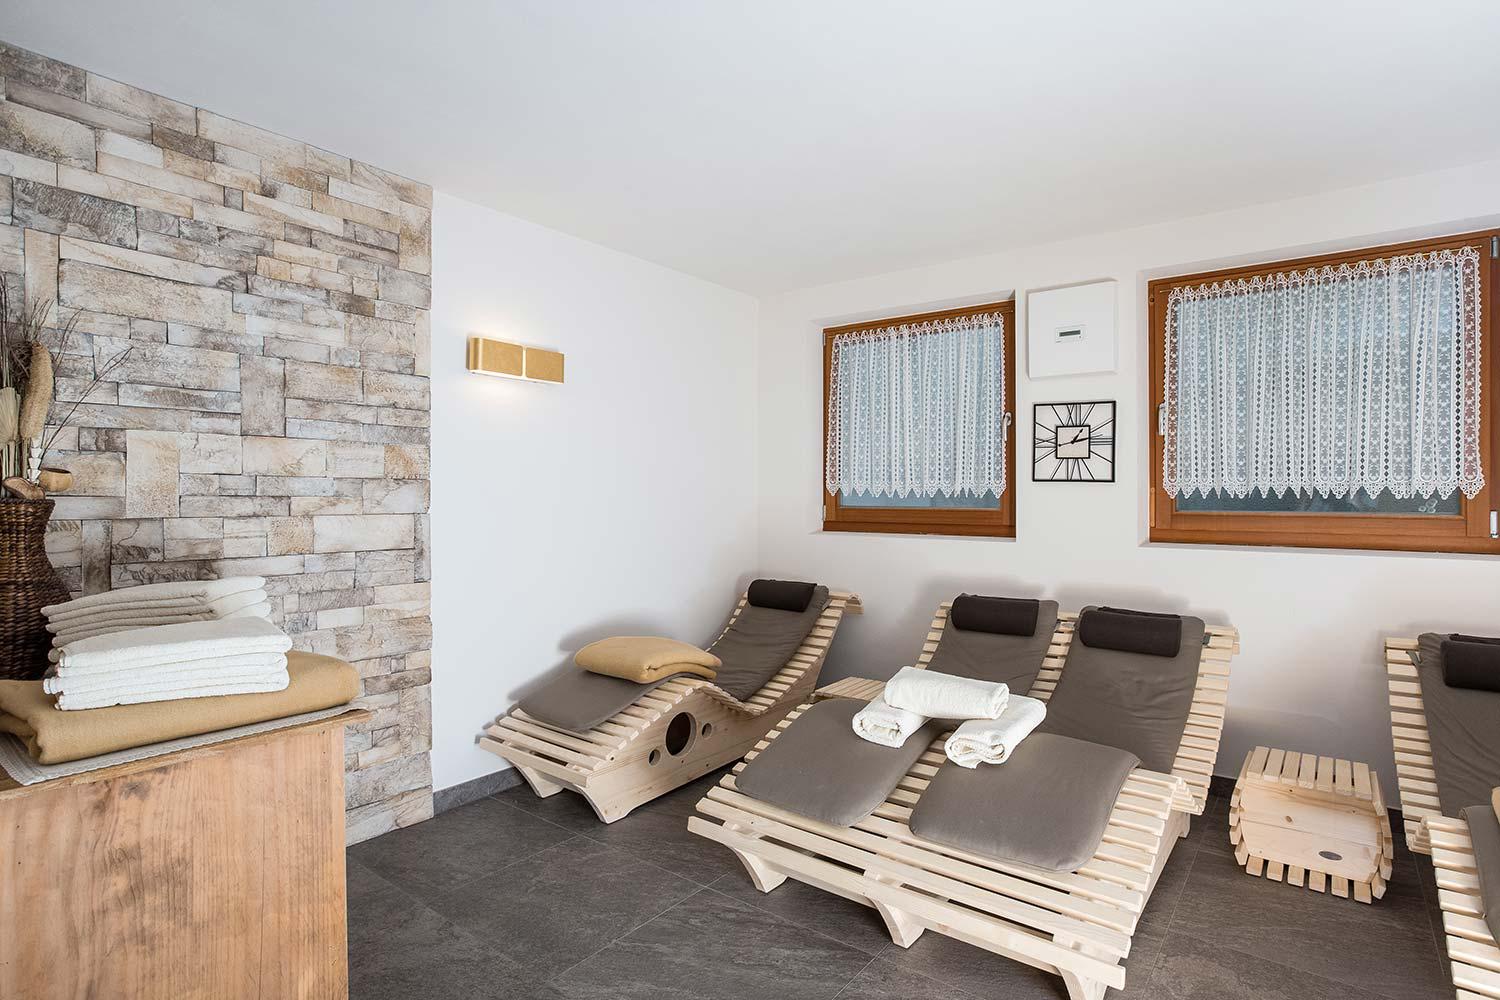 Settore sauna – lettini relax